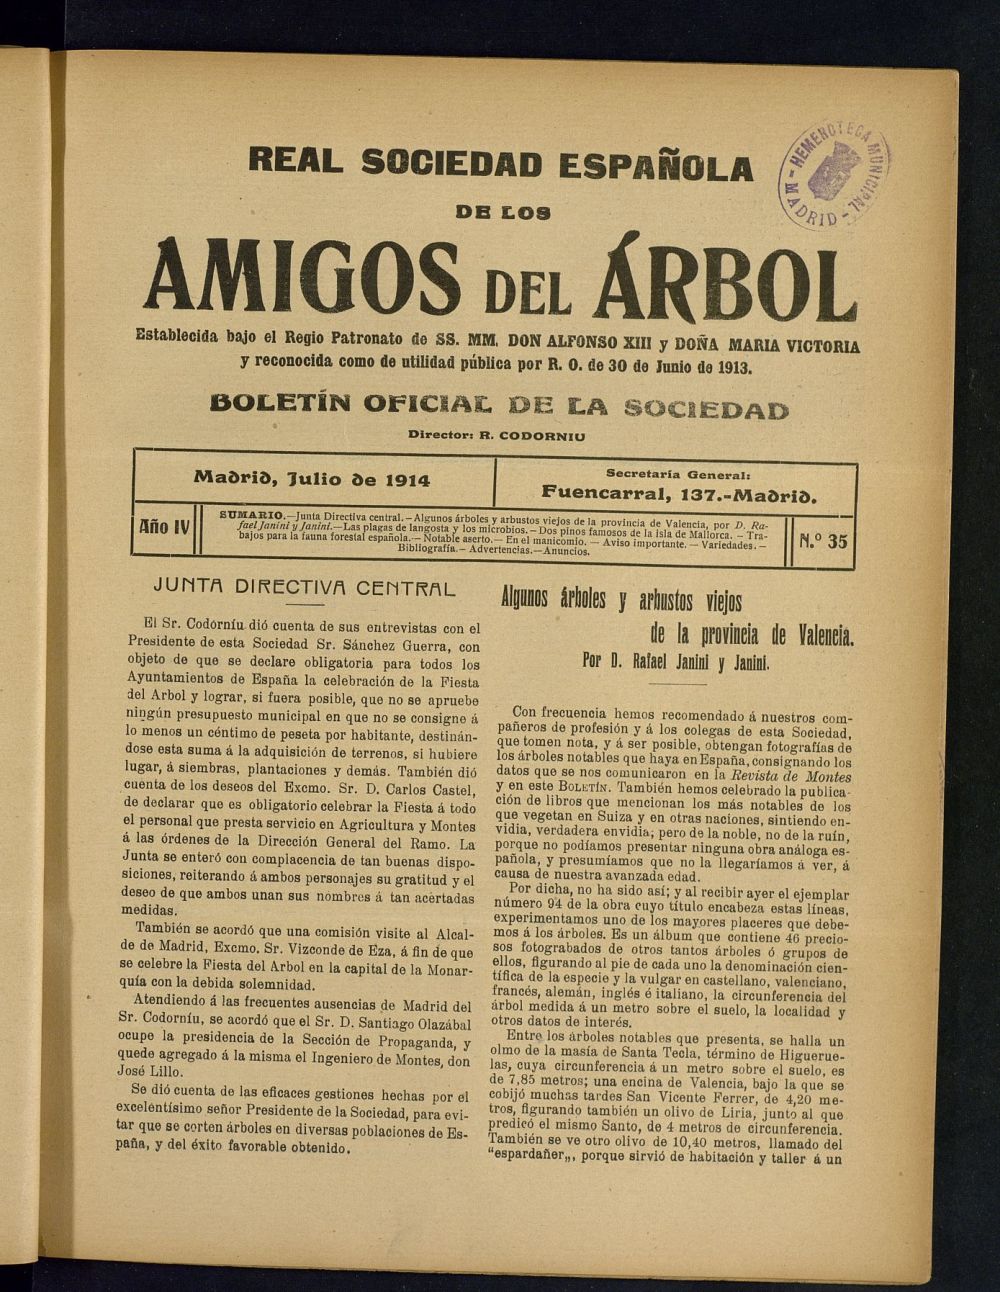 Boletn Comisin organizadora de la Sociedad Espaola de los amigos del rbol de julio de 1914